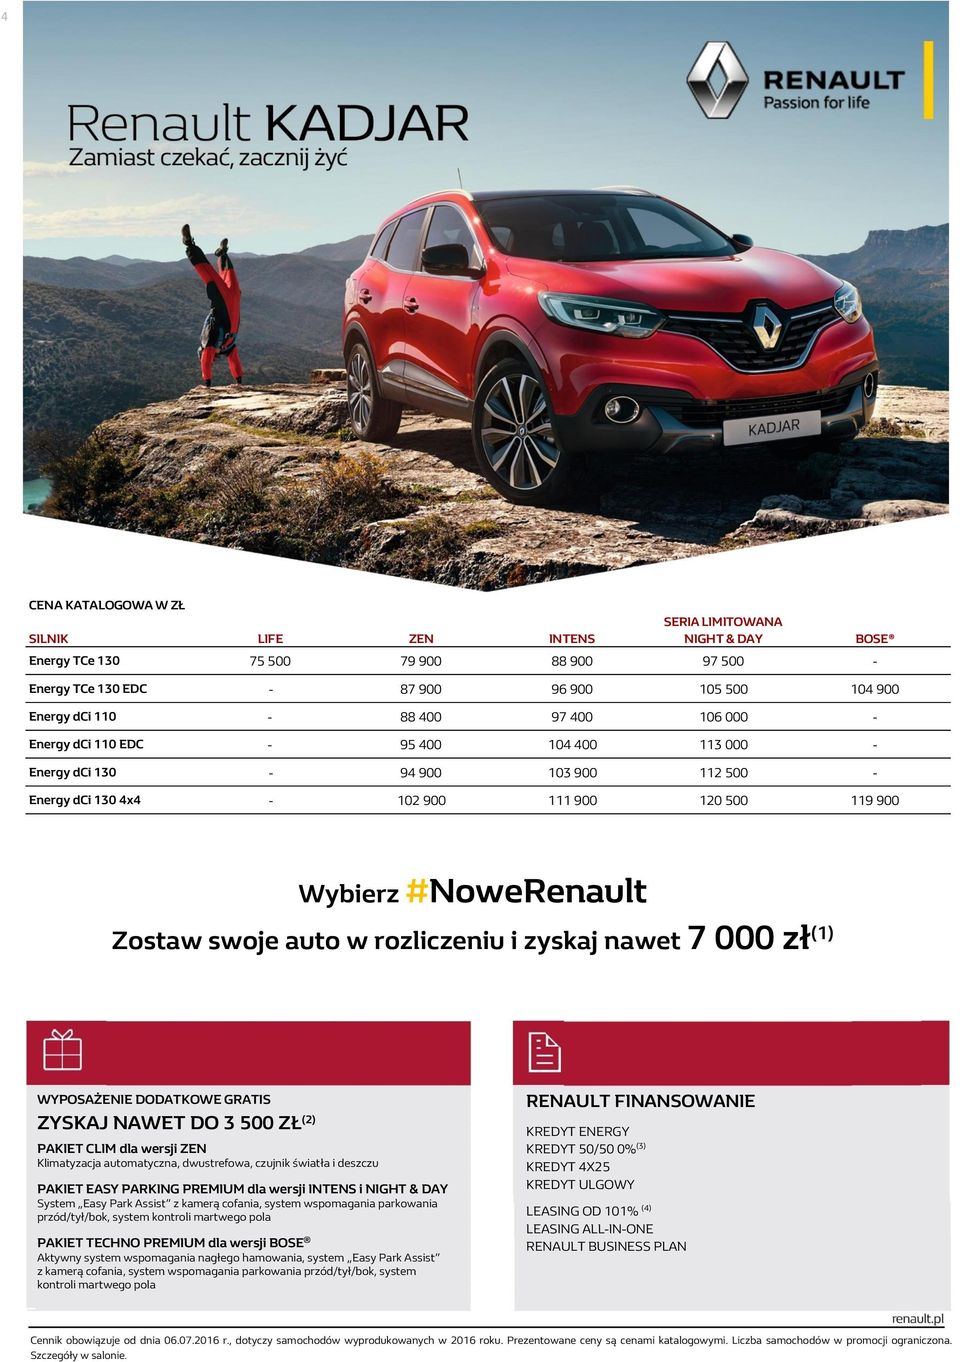 7 000 zł (1) Oferta specjalna na crossovery Renault Renault Kadjar już od 599 zł/mies.